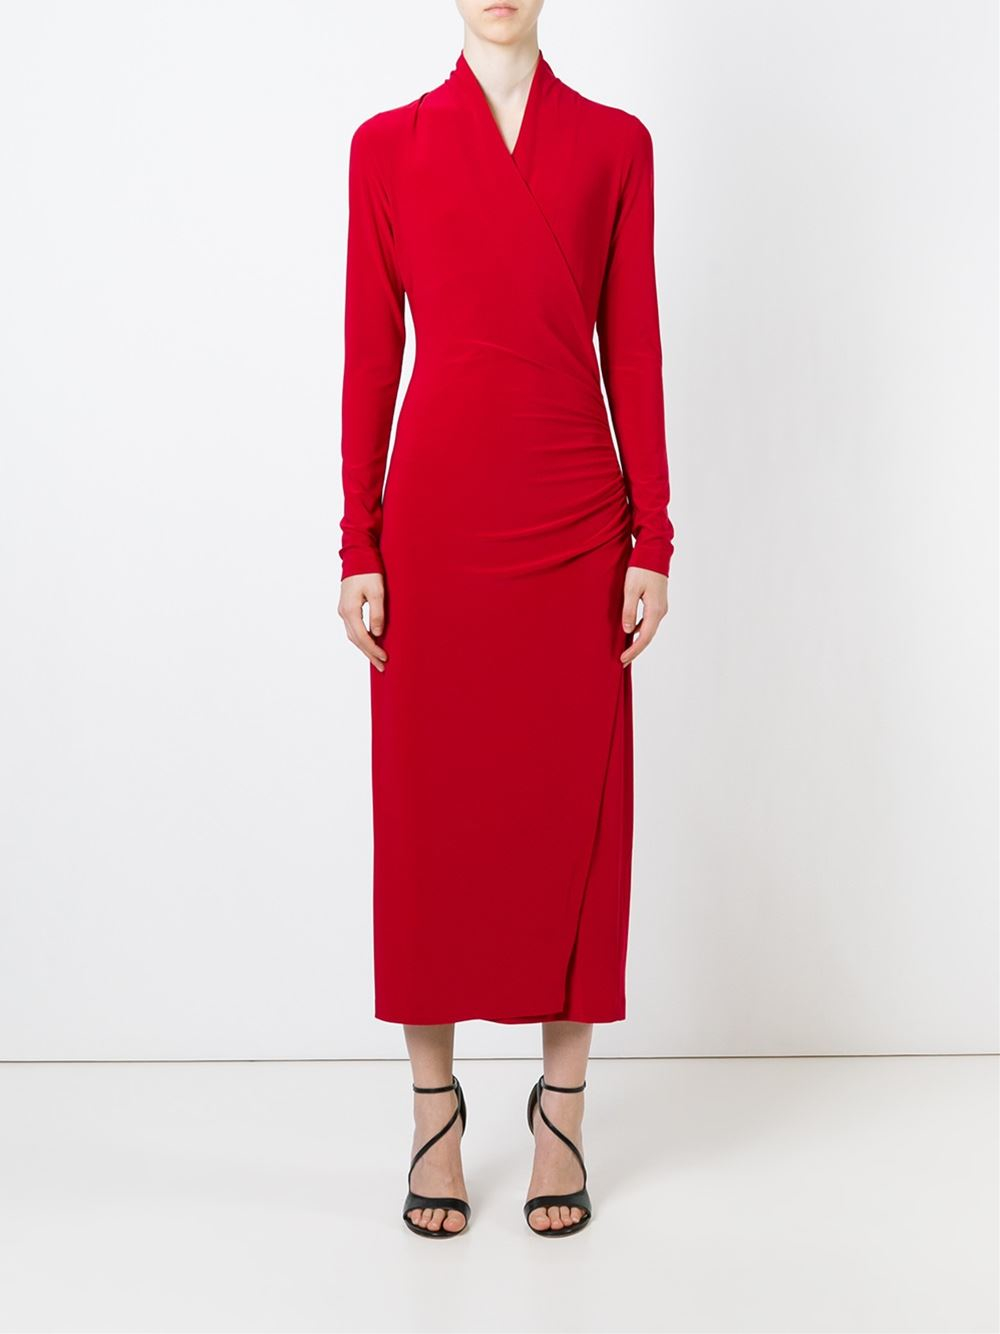 Norma kamali Longline Wrap Jersey Dress in Red | Lyst